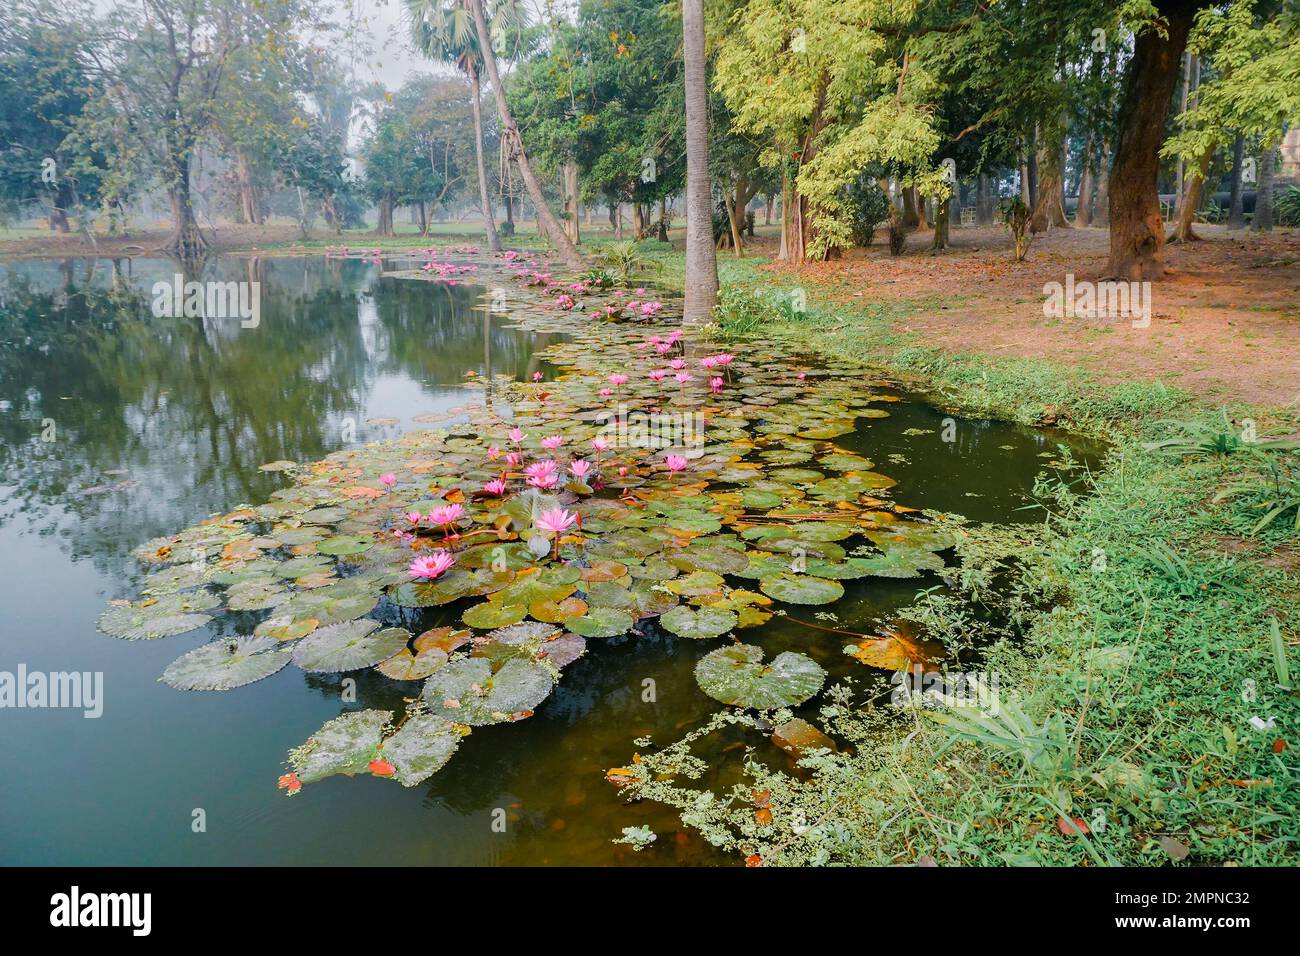 Wunderschöner Blick auf einen Teich voller Blätter von Nymphaea, Wasserpflanzen, allgemein bekannt als Seerosen. Indisches Winterbild. Howrah, W.B., Indien. Stockfoto